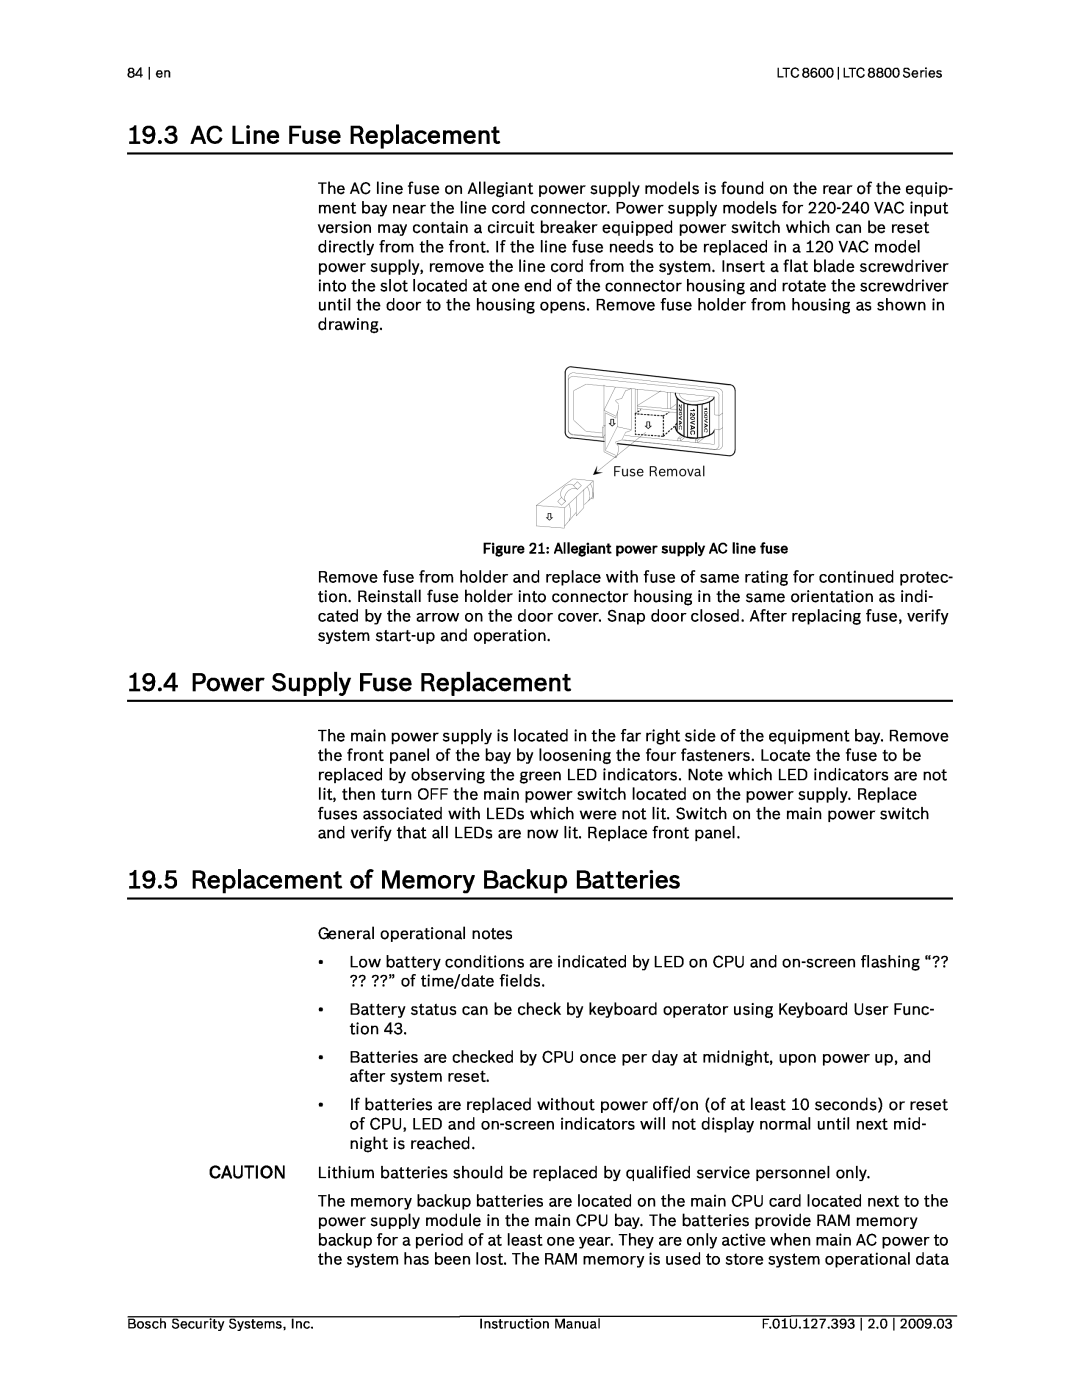 Bosch Appliances LTC 8600 AC Line Fuse Replacement, Power Supply Fuse Replacement, Replacement of Memory Backup Batteries 